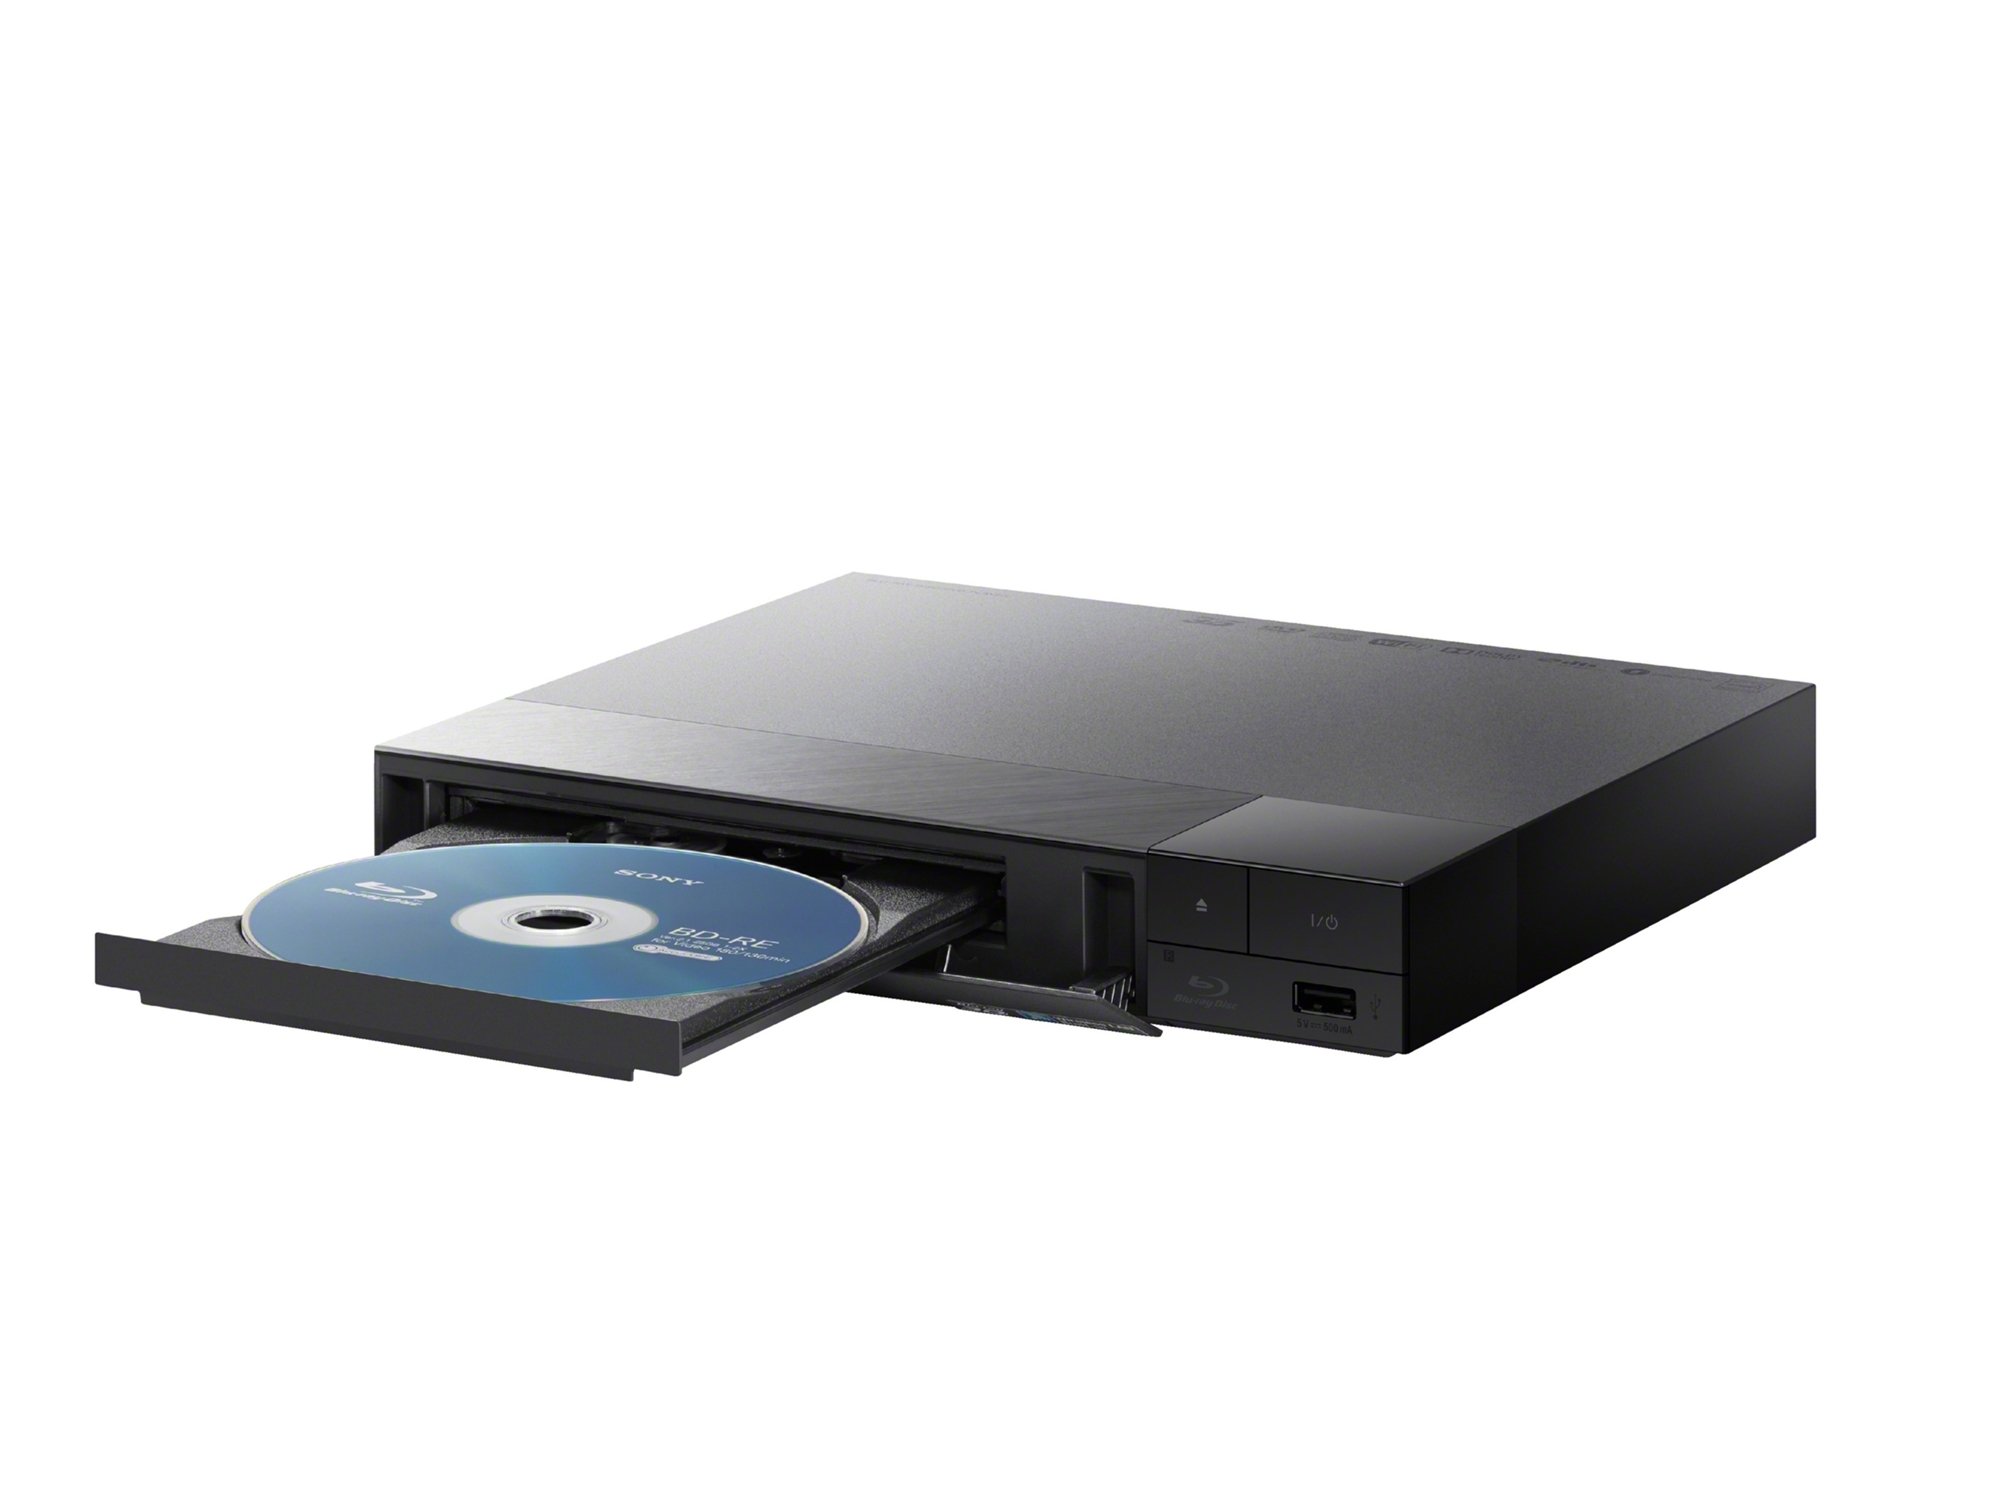 amanecer Interacción Burro Reproductor Blu-Ray SONY BDP-S1700 (USB - HDMI - Full HD) | Worten Canarias